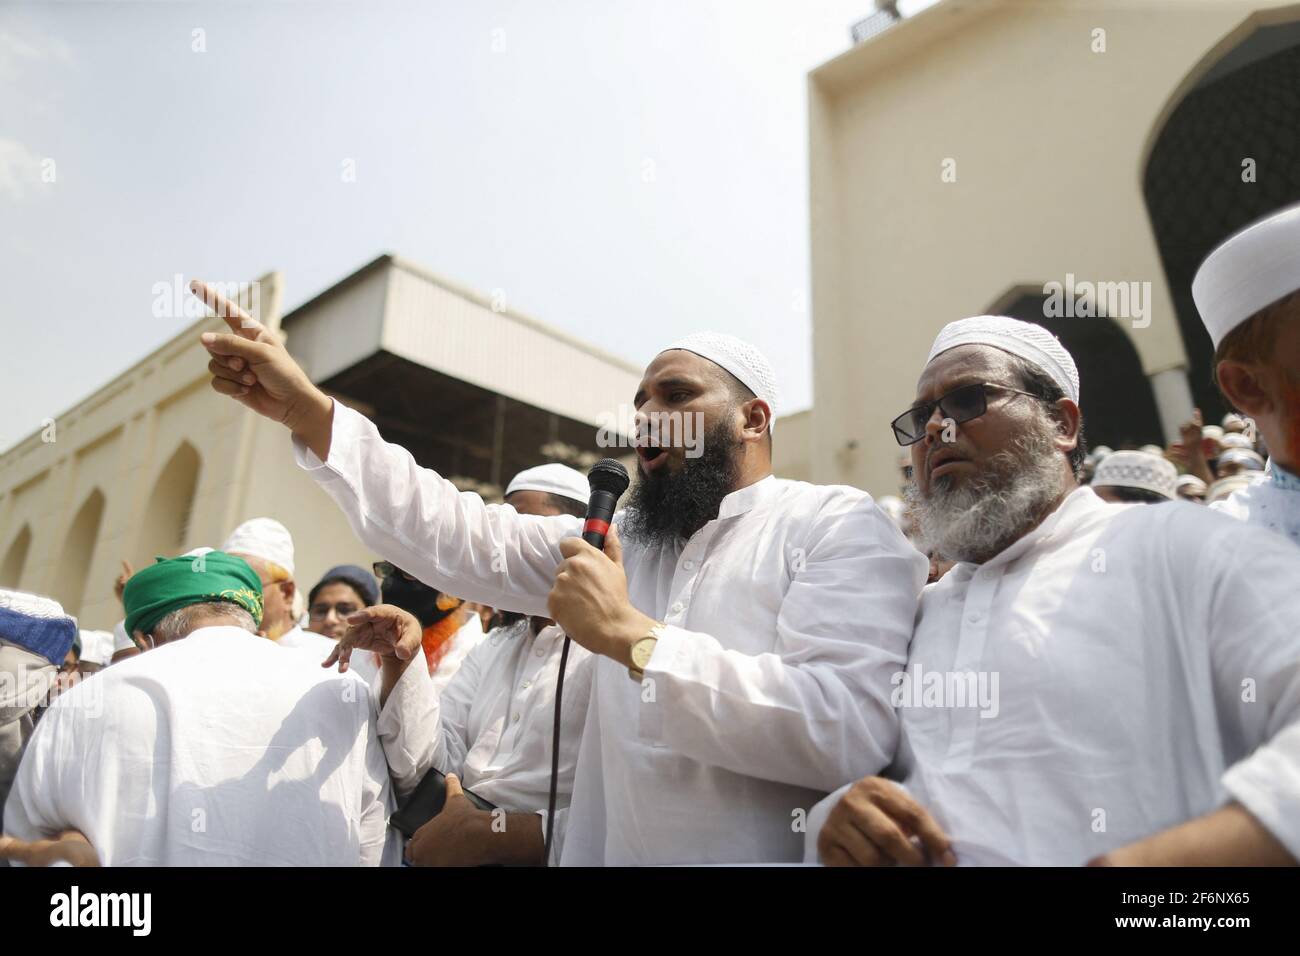 Hefajat-e-Islam a organisé une manifestation devant la mosquée nationale Baitul Mukarram pour protester contre la mort de ses militants lors d'affrontements avec des responsables de la loi pendant trois jours, à Dhaka, au Bangladesh, le 2 avril 2021. Photo de Kanti Das Suvra/ABACAPRESS.COM Banque D'Images